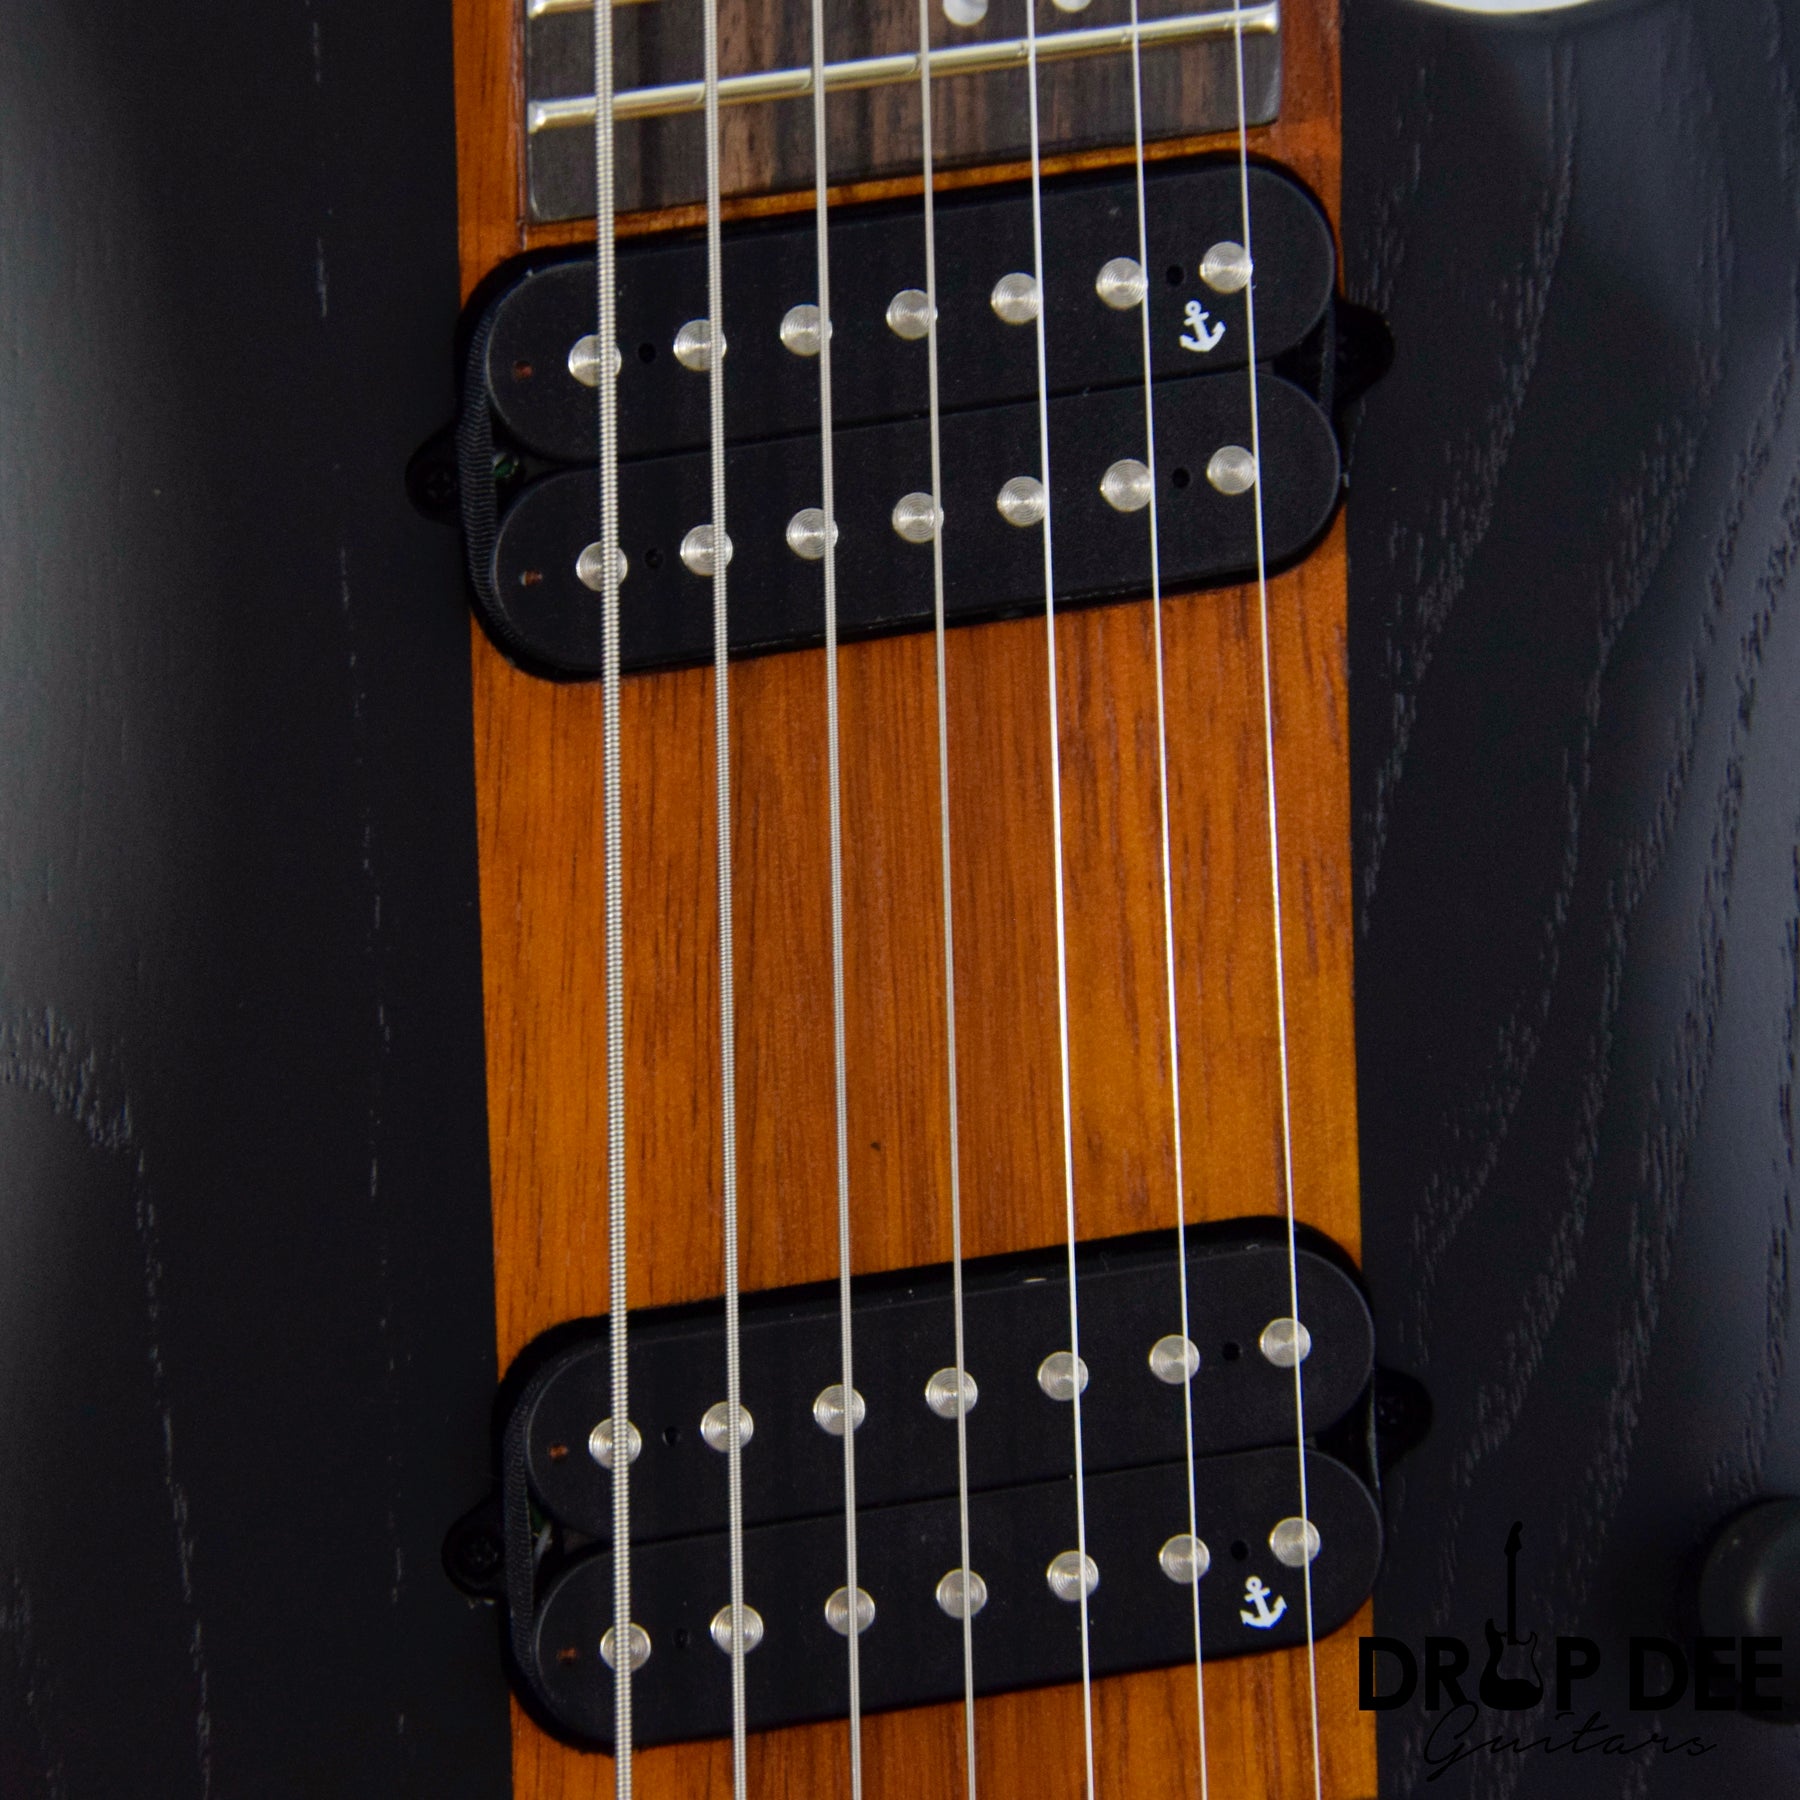 Schecter Rob Scallon Signature C-7 Multiscale 7-String Electric Guitar